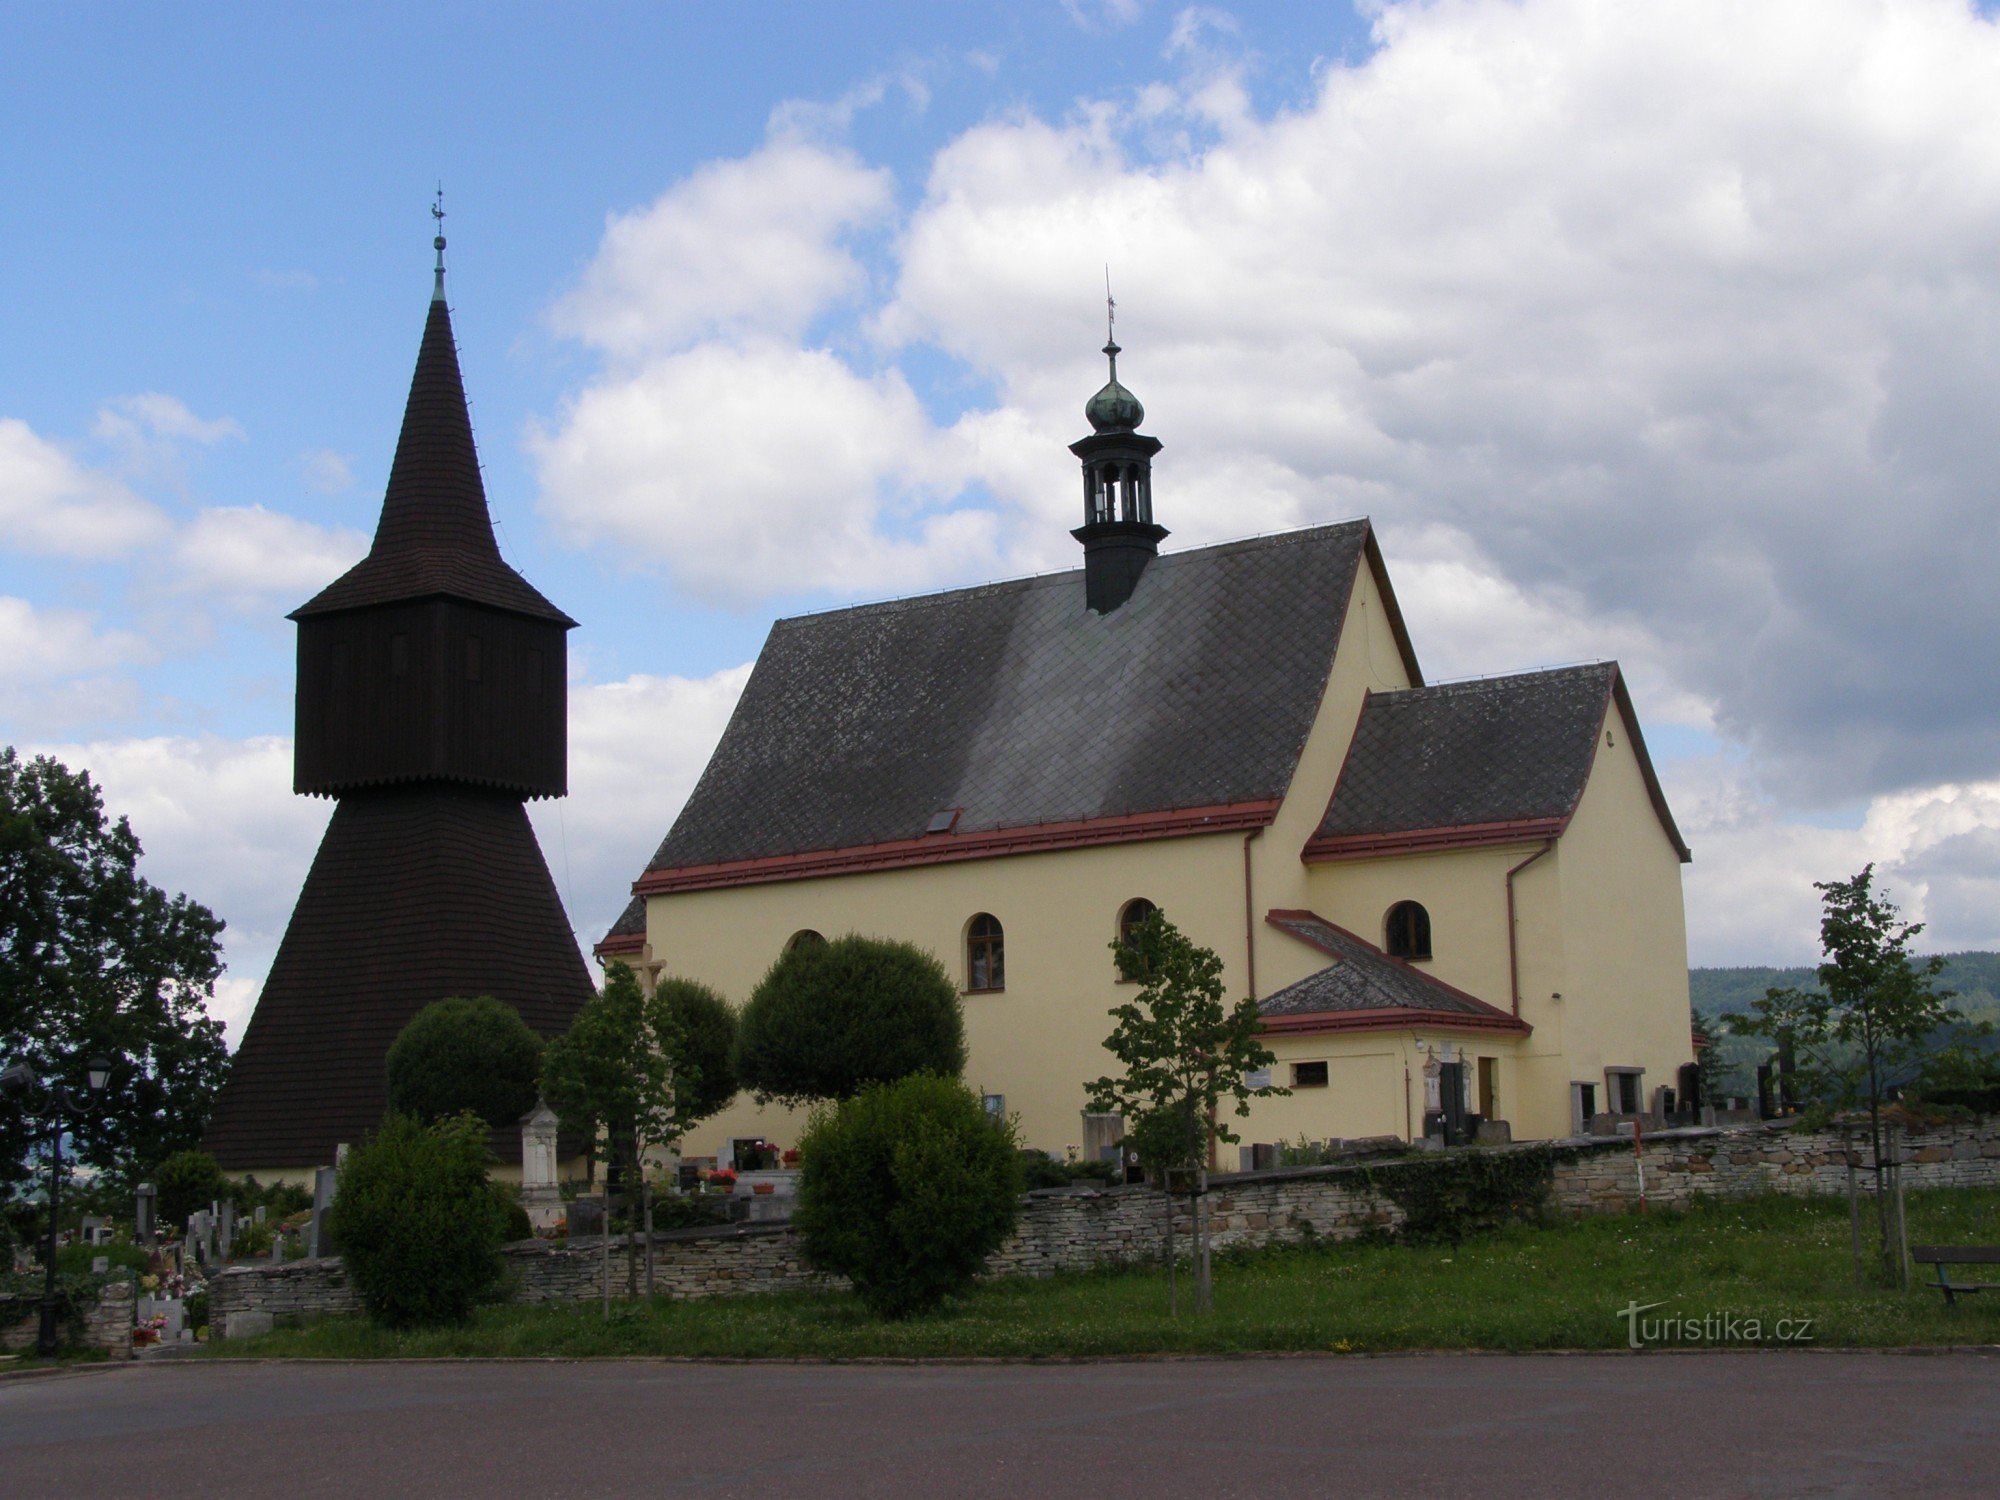 Podkrkonoší 的 Rtyne - 圣彼得教堂施洗约翰与钟楼